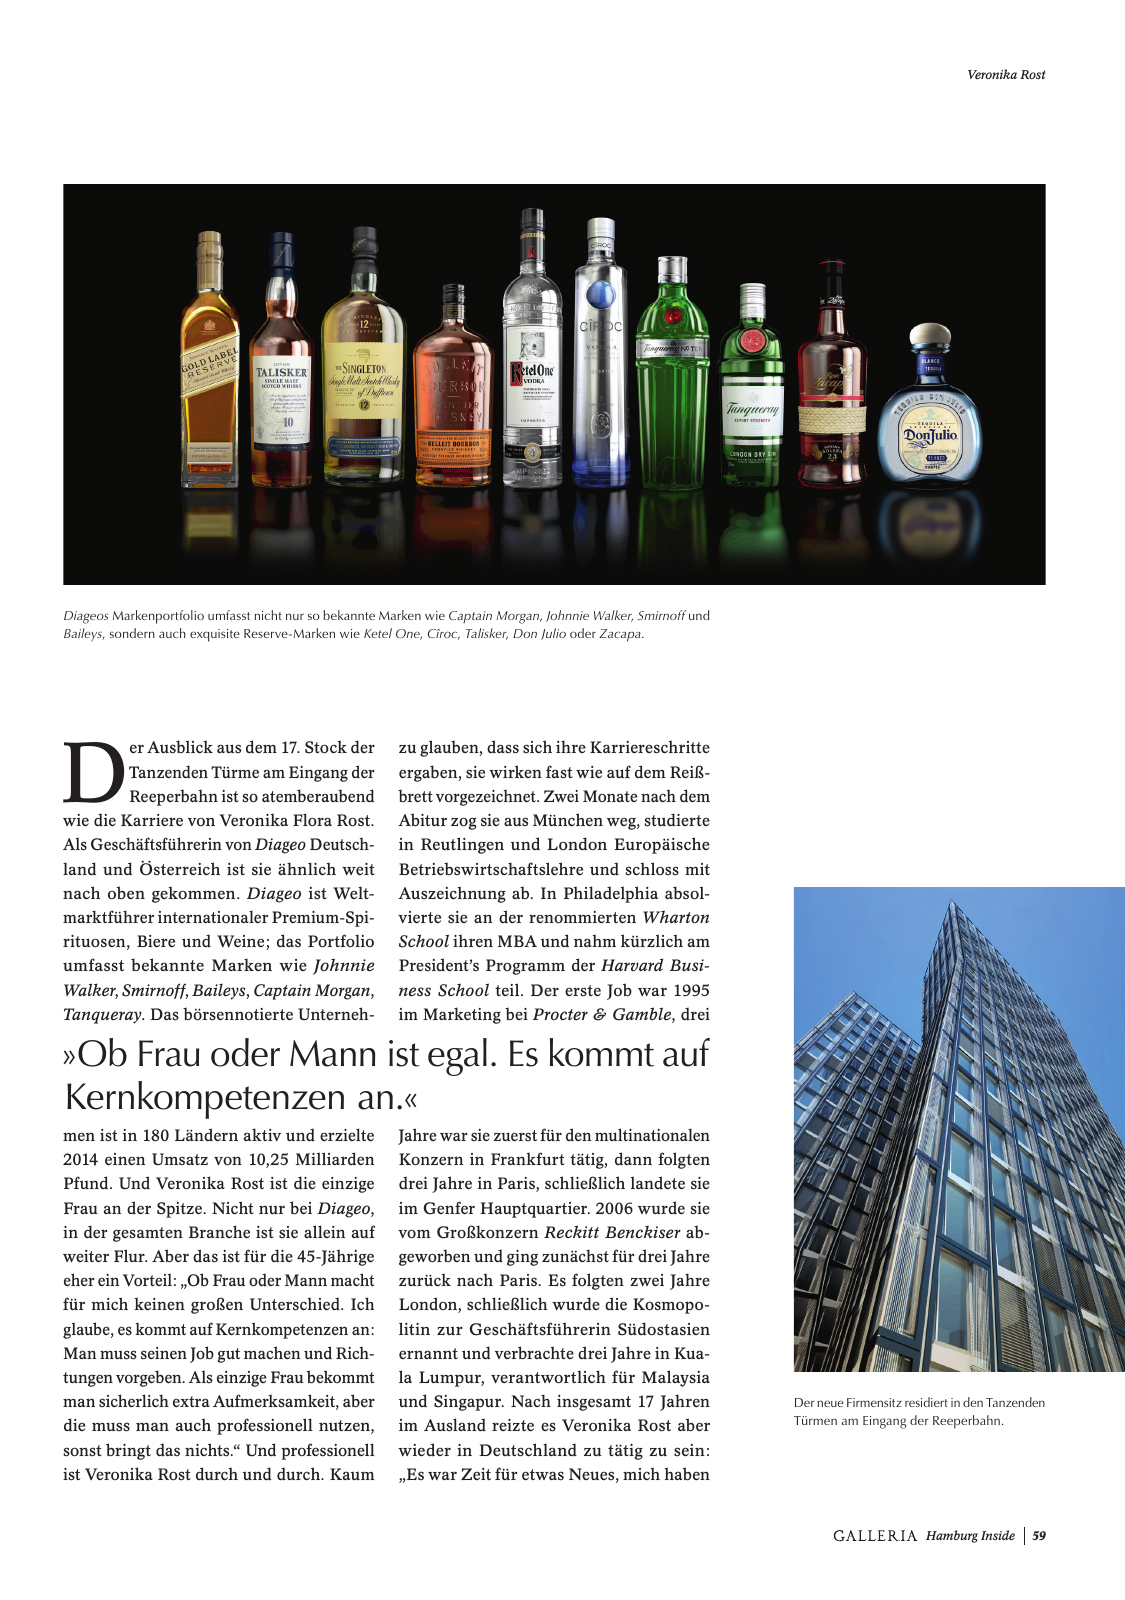 Vorschau GALLERIA Magazin Hamburg Inside 2 Seite 59